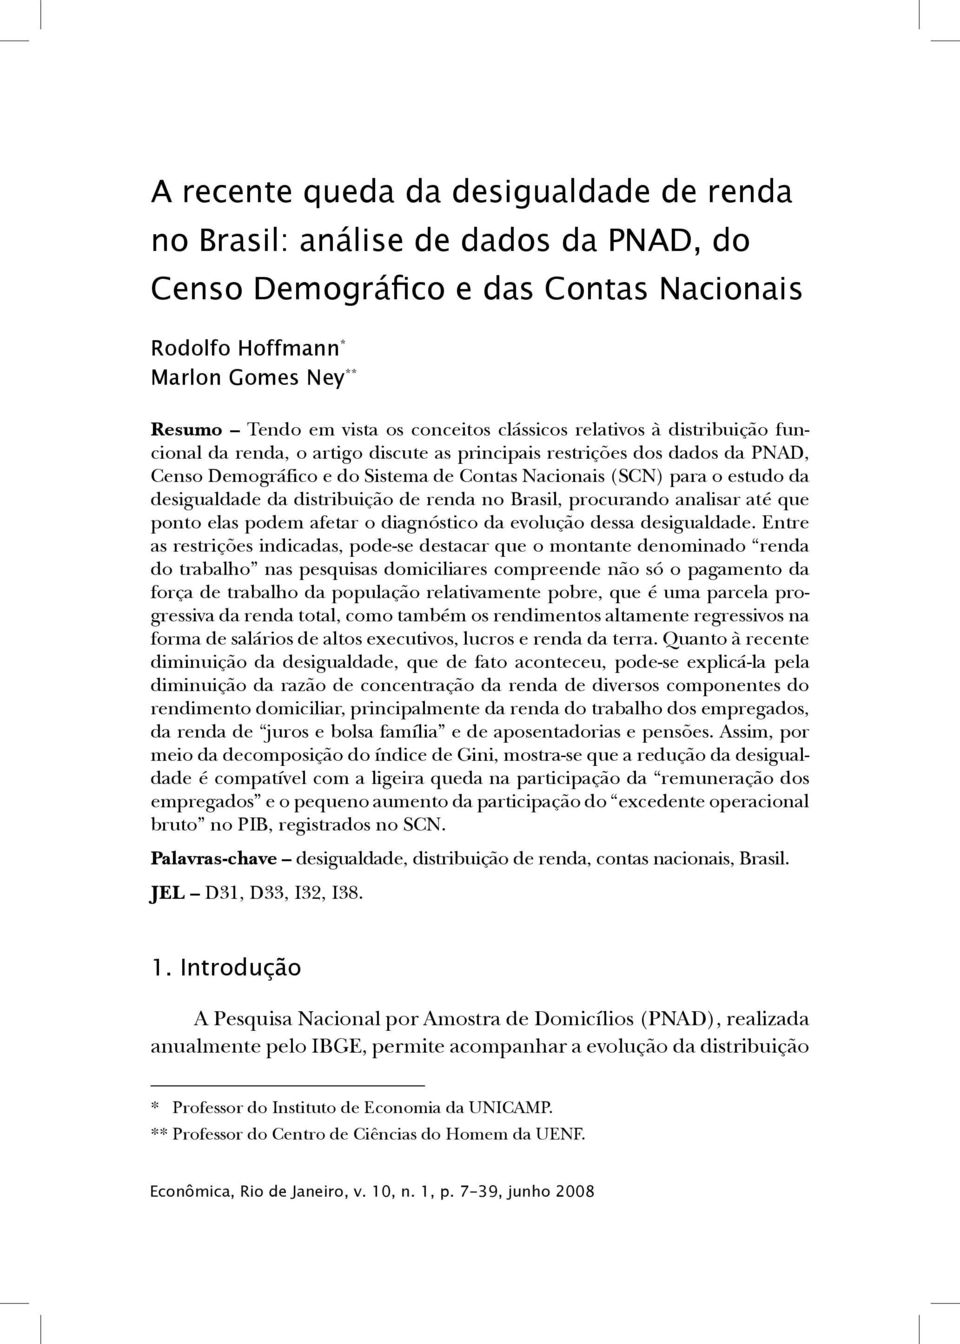 Nacionais (SCN) para o estudo da desigualdade da distribuição de renda no Brasil, procurando analisar até que ponto elas podem afetar o diagnóstico da evolução dessa desigualdade.